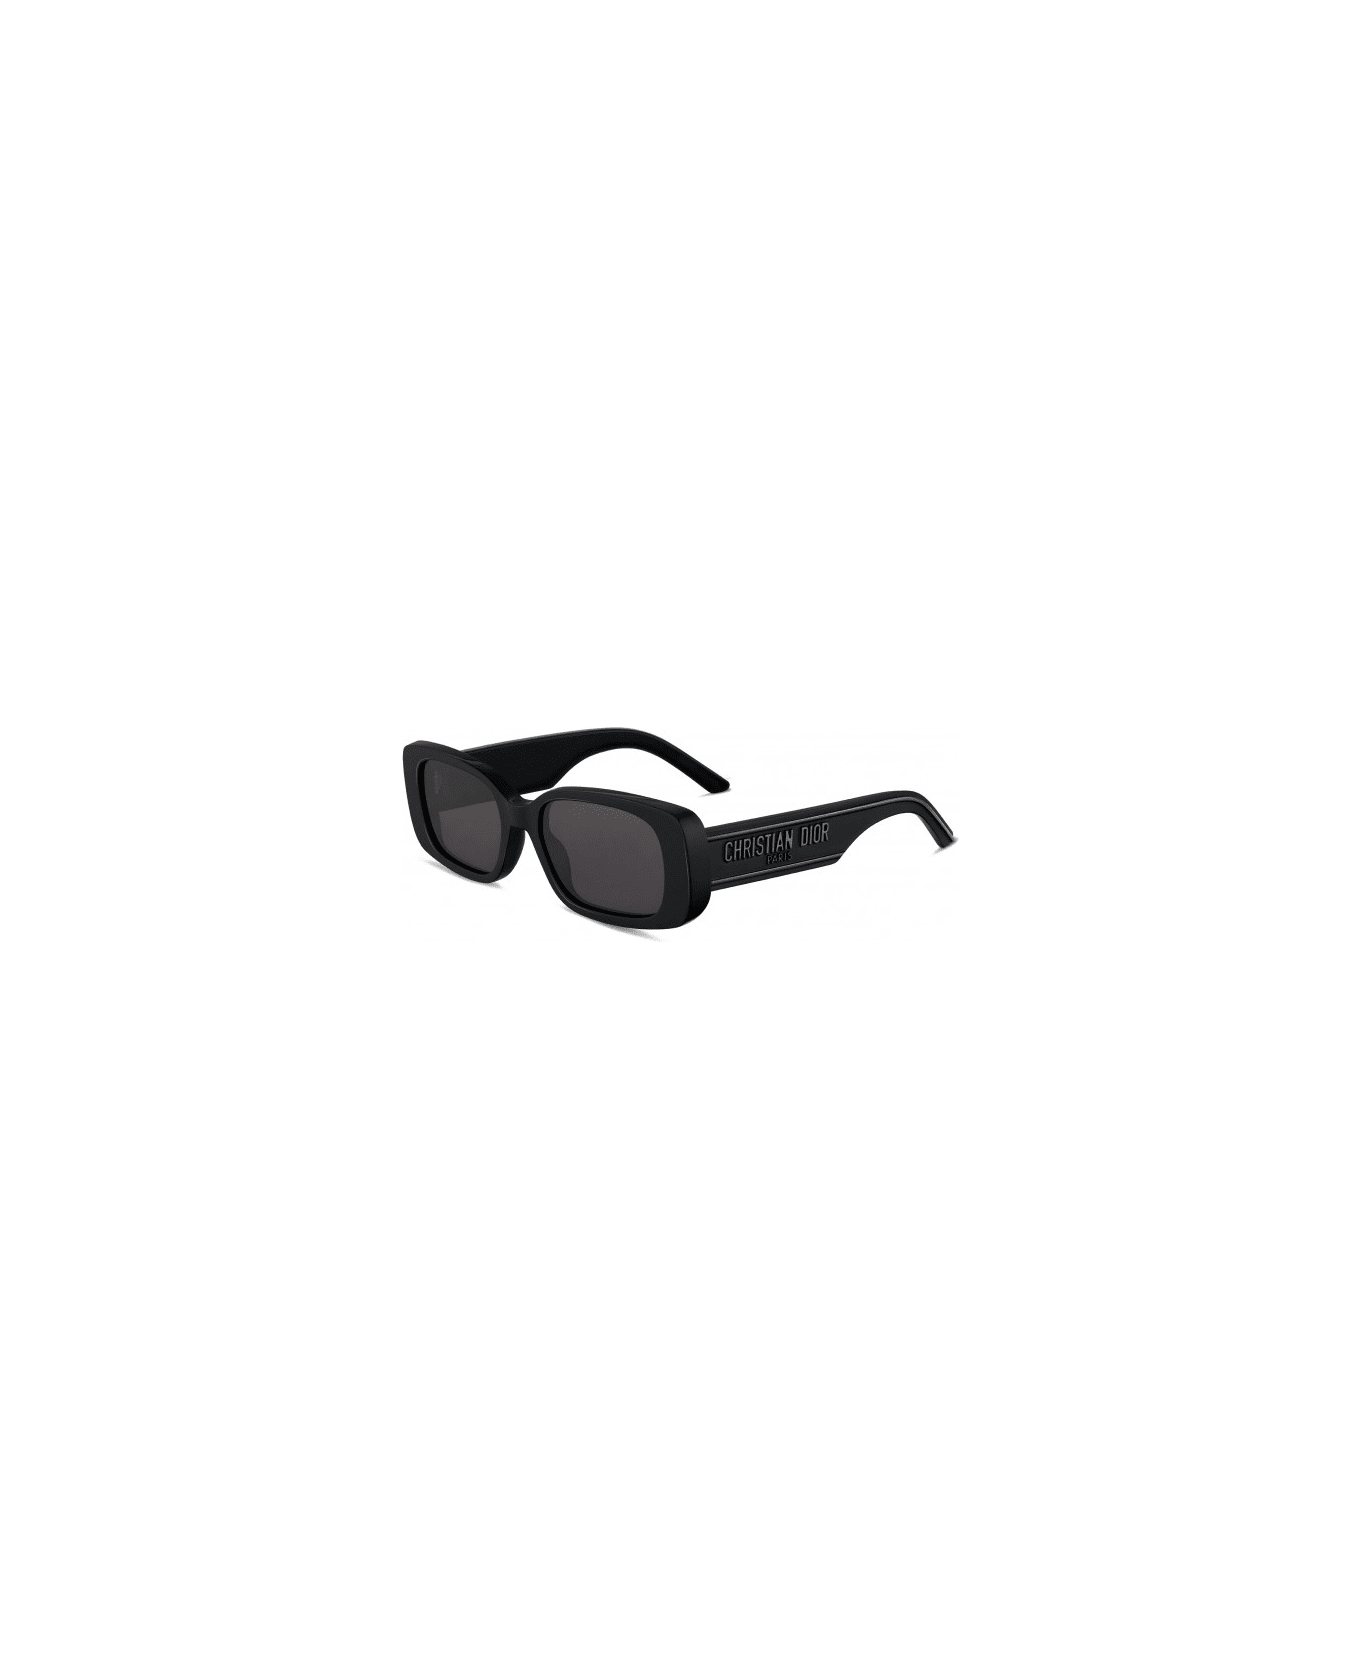 Dior Eyewear Sunglasses - Nero/Nero